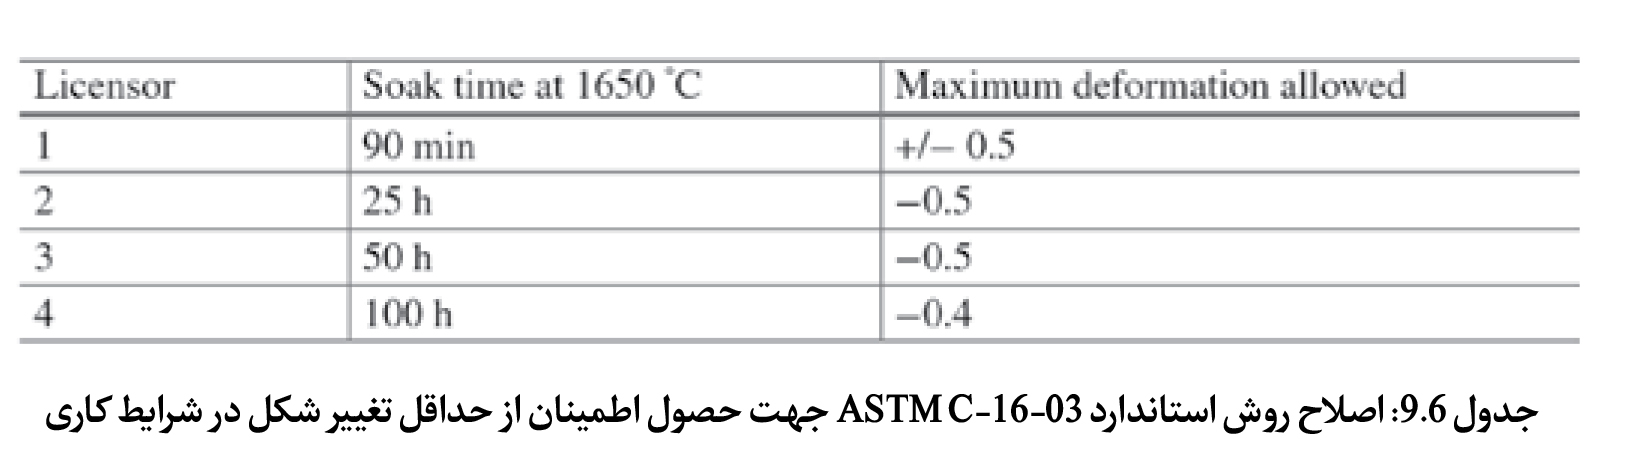 جدول 9.6: اصلاح روش استاندارد ASTM C-16-03 جهت حصول اطمینان از حداقل تغییر شکل در شرایط کاری